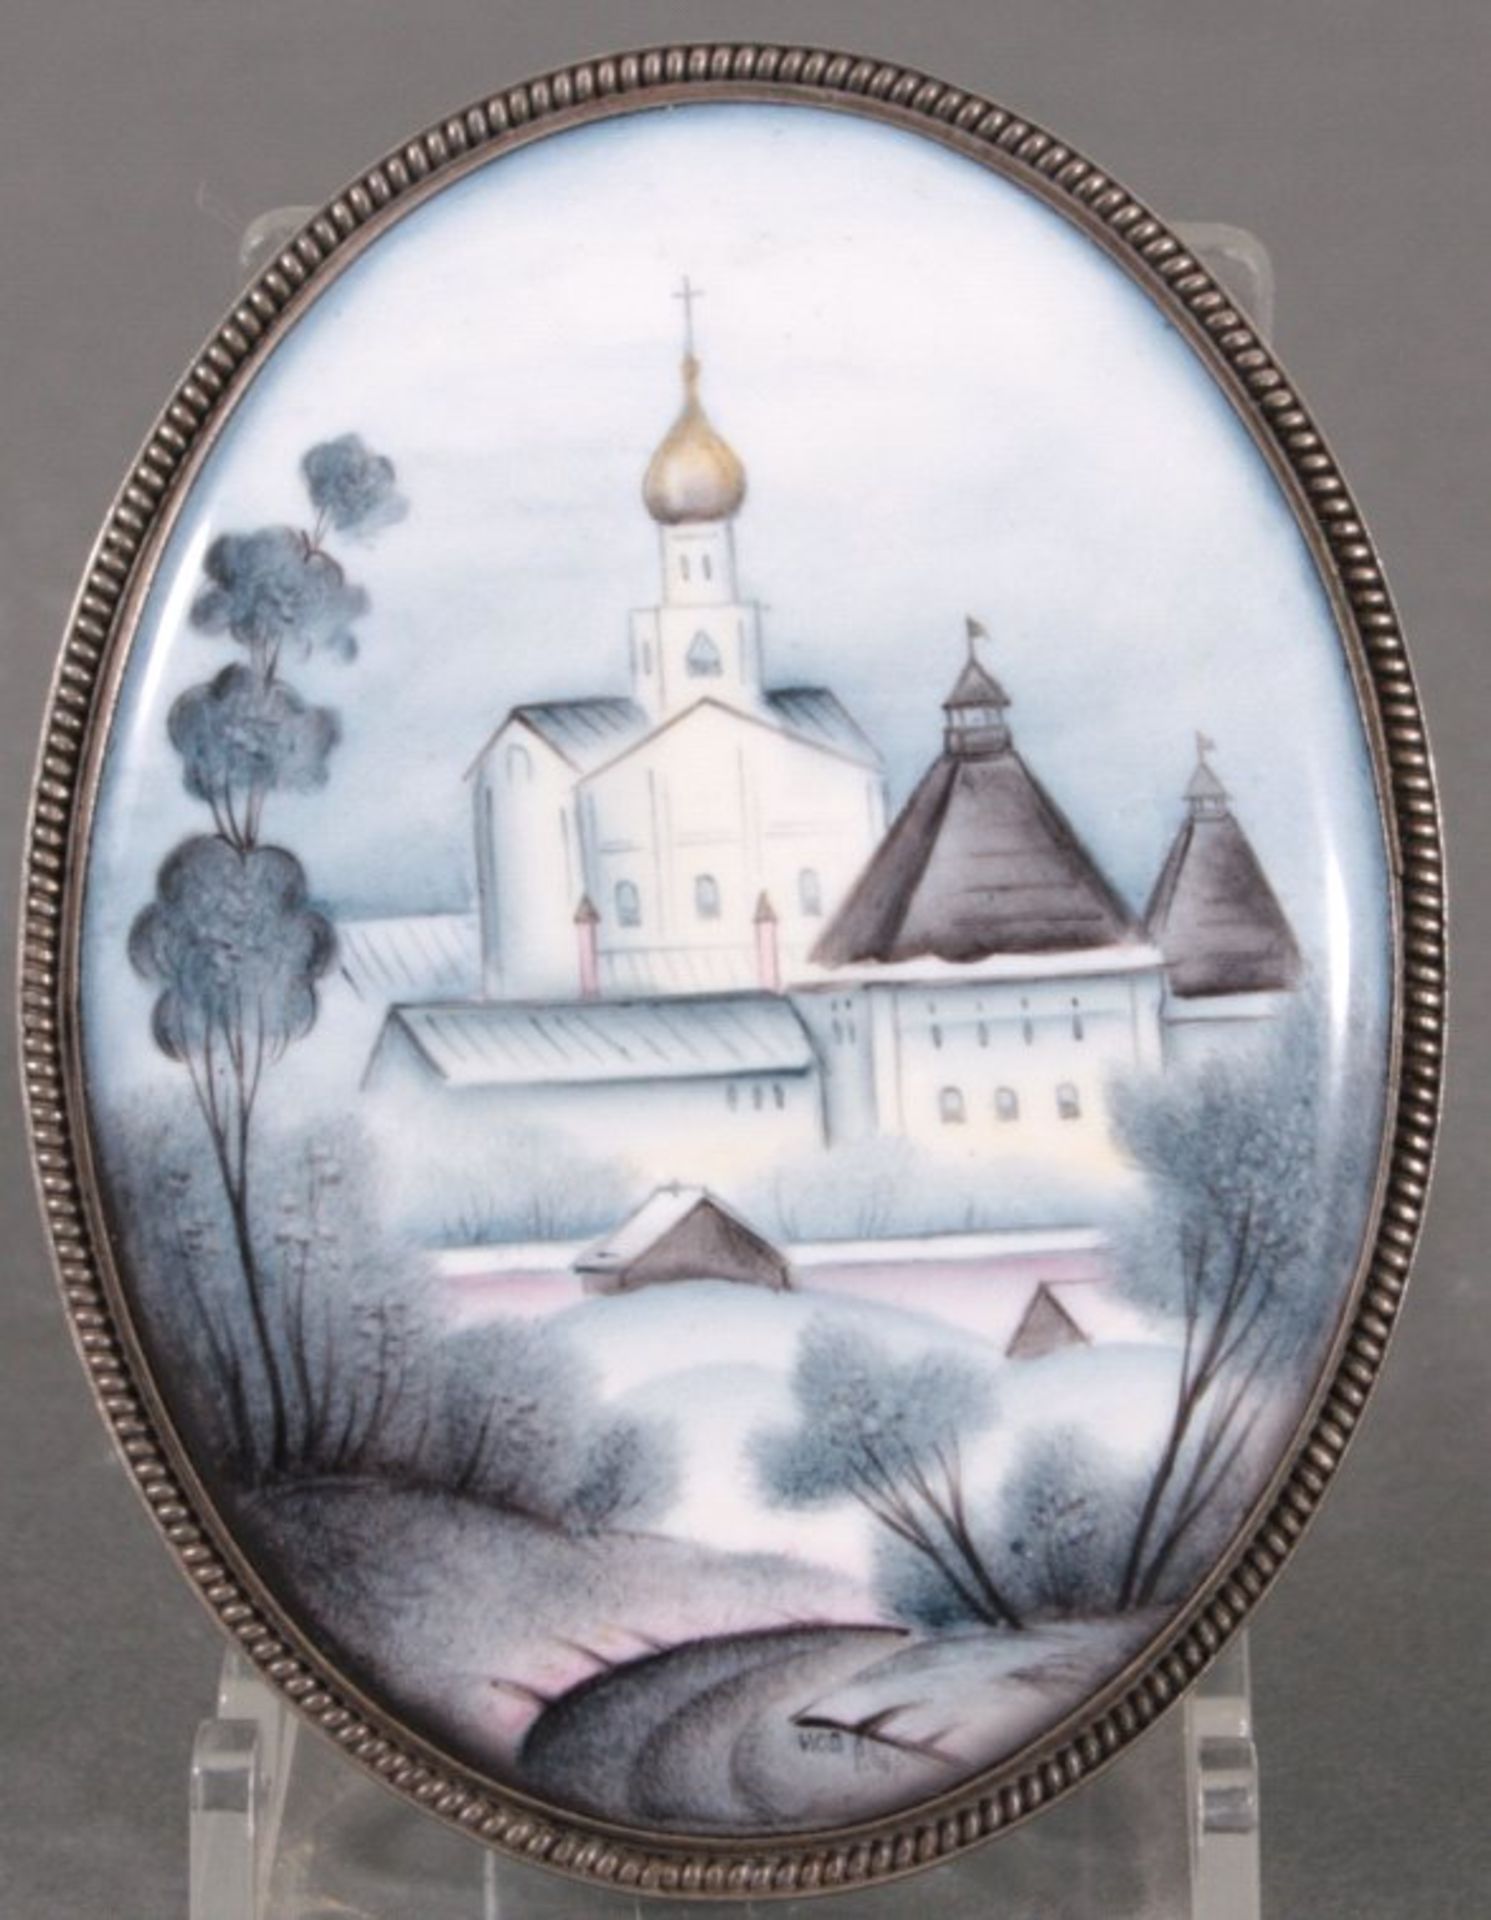 Porzellanplakette, Russland 19. Jh.ovale Form, Silberfassung, polychrome Darstellung einerorthodoxen